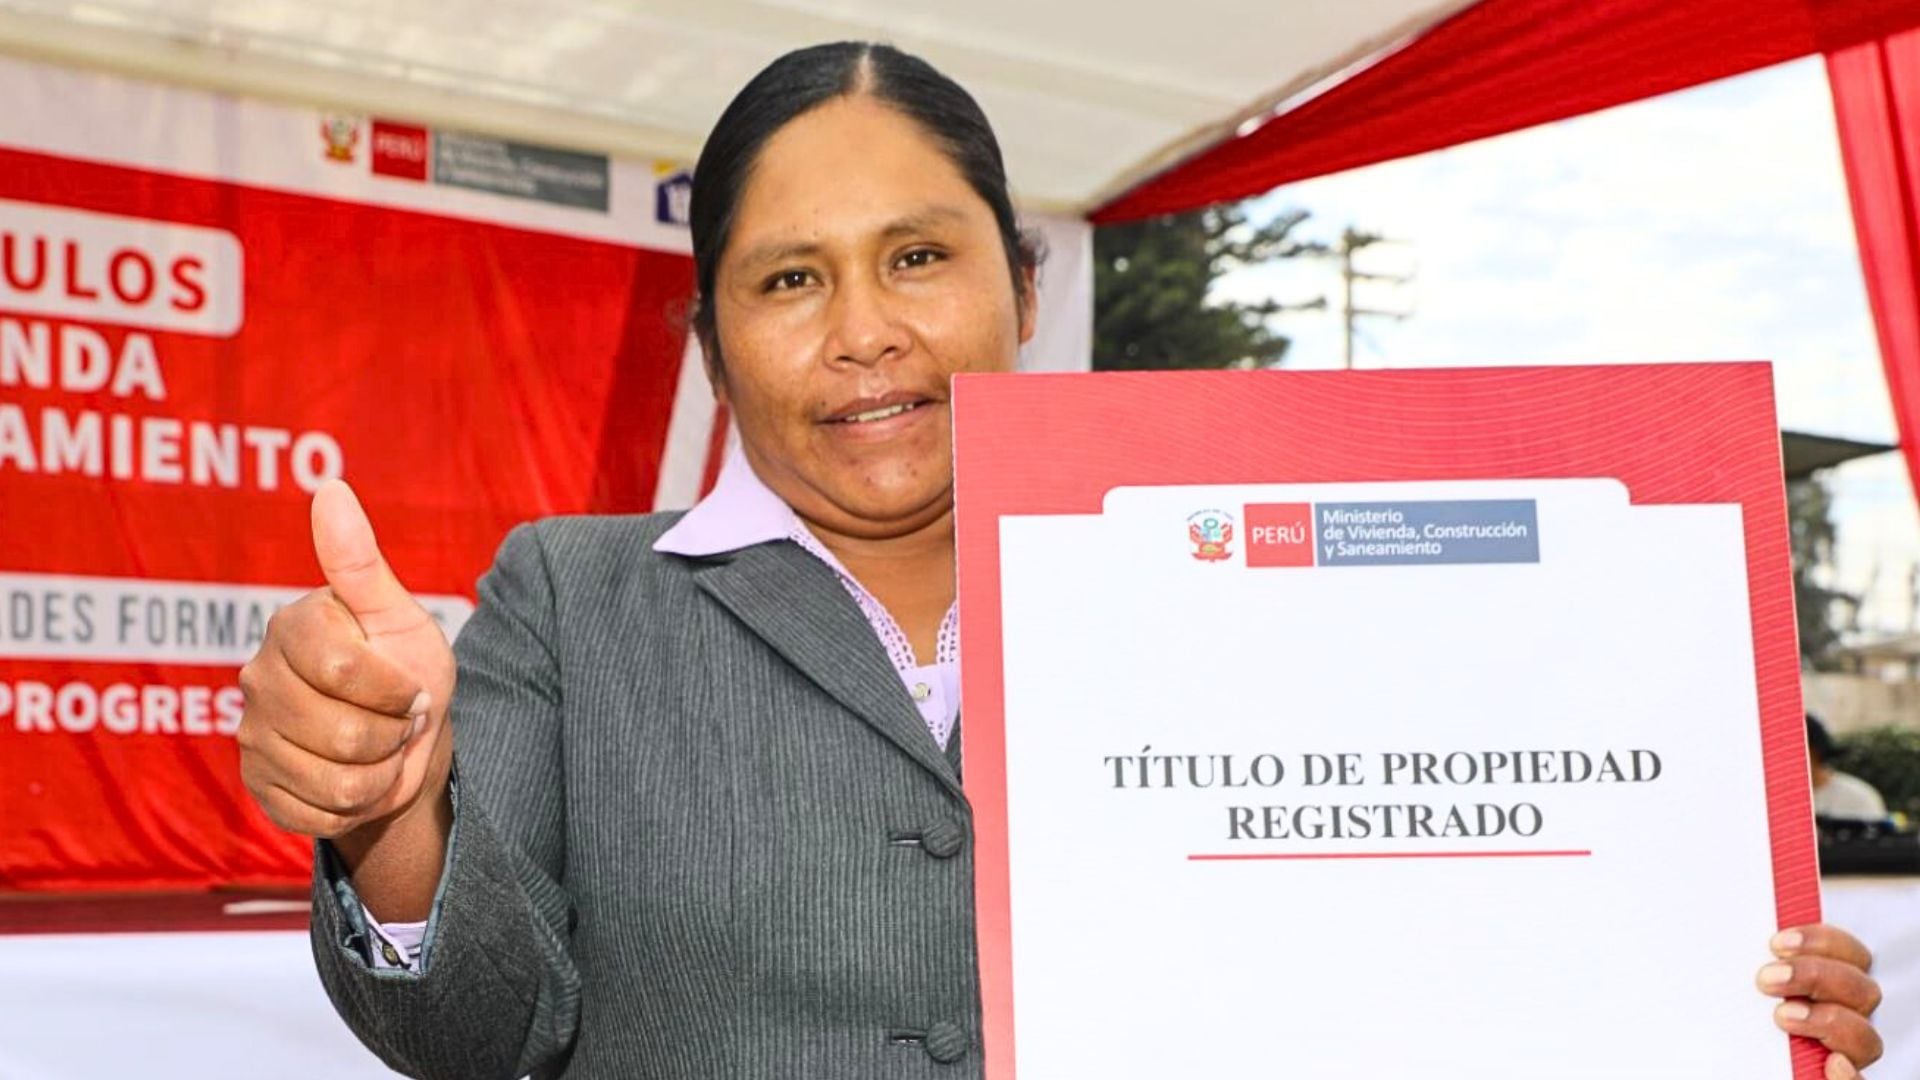 Persona con su título de propiedad en Perú